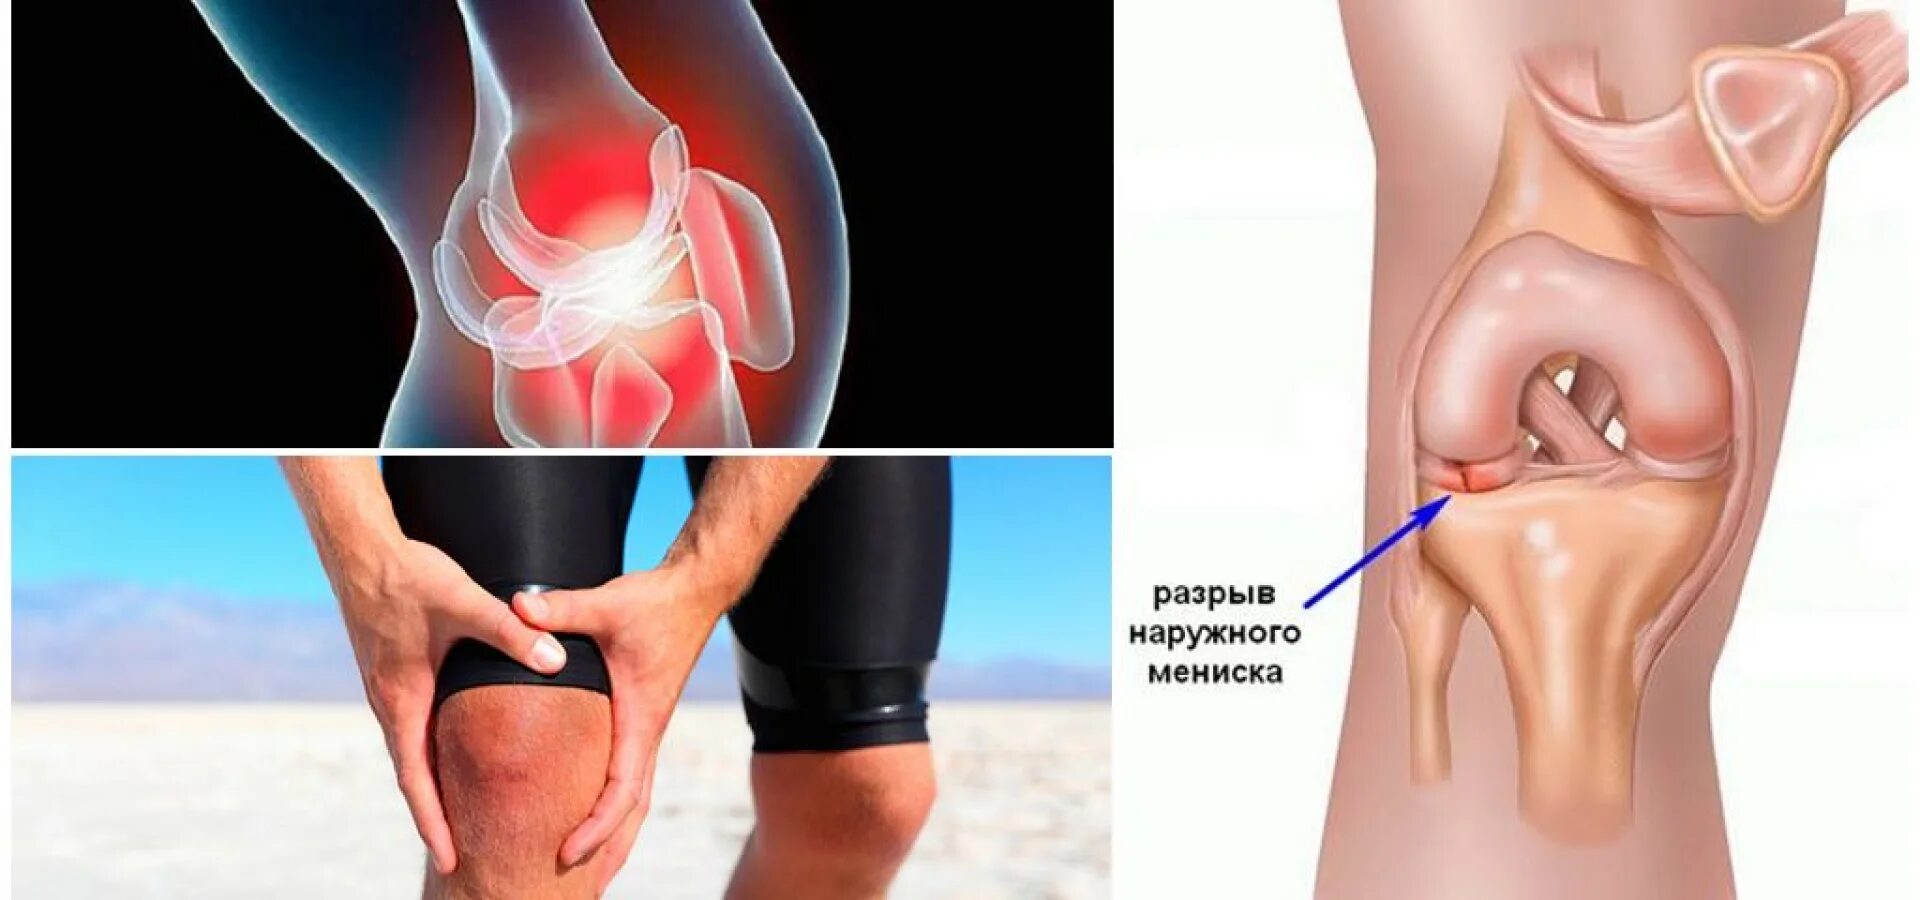 Поврежденный мениск коленного сустава. Разрыв мениска коленного. Разрыв мениска коленного сустава. Разрыв коленого сустава Менис. Менископатия коленного сустава.